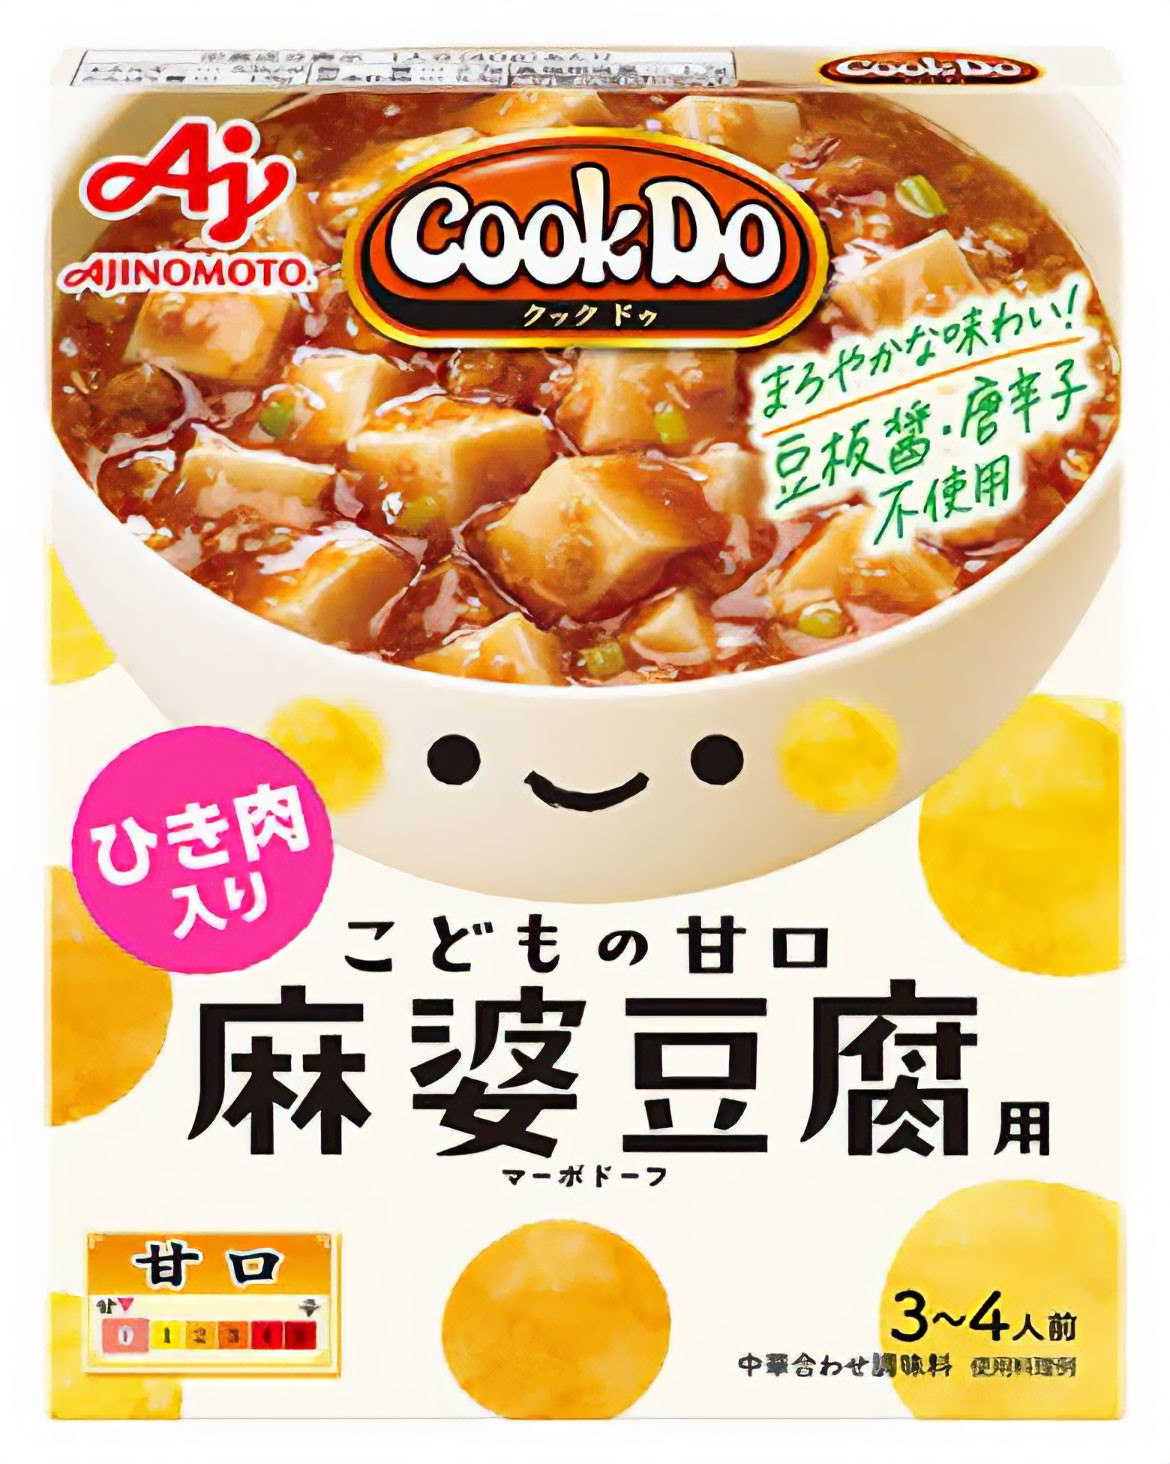 照喜名さんがパッケージデザインを担当した「Cook Do®」シリーズ「ひき肉入りこどもの甘口麻婆豆腐」